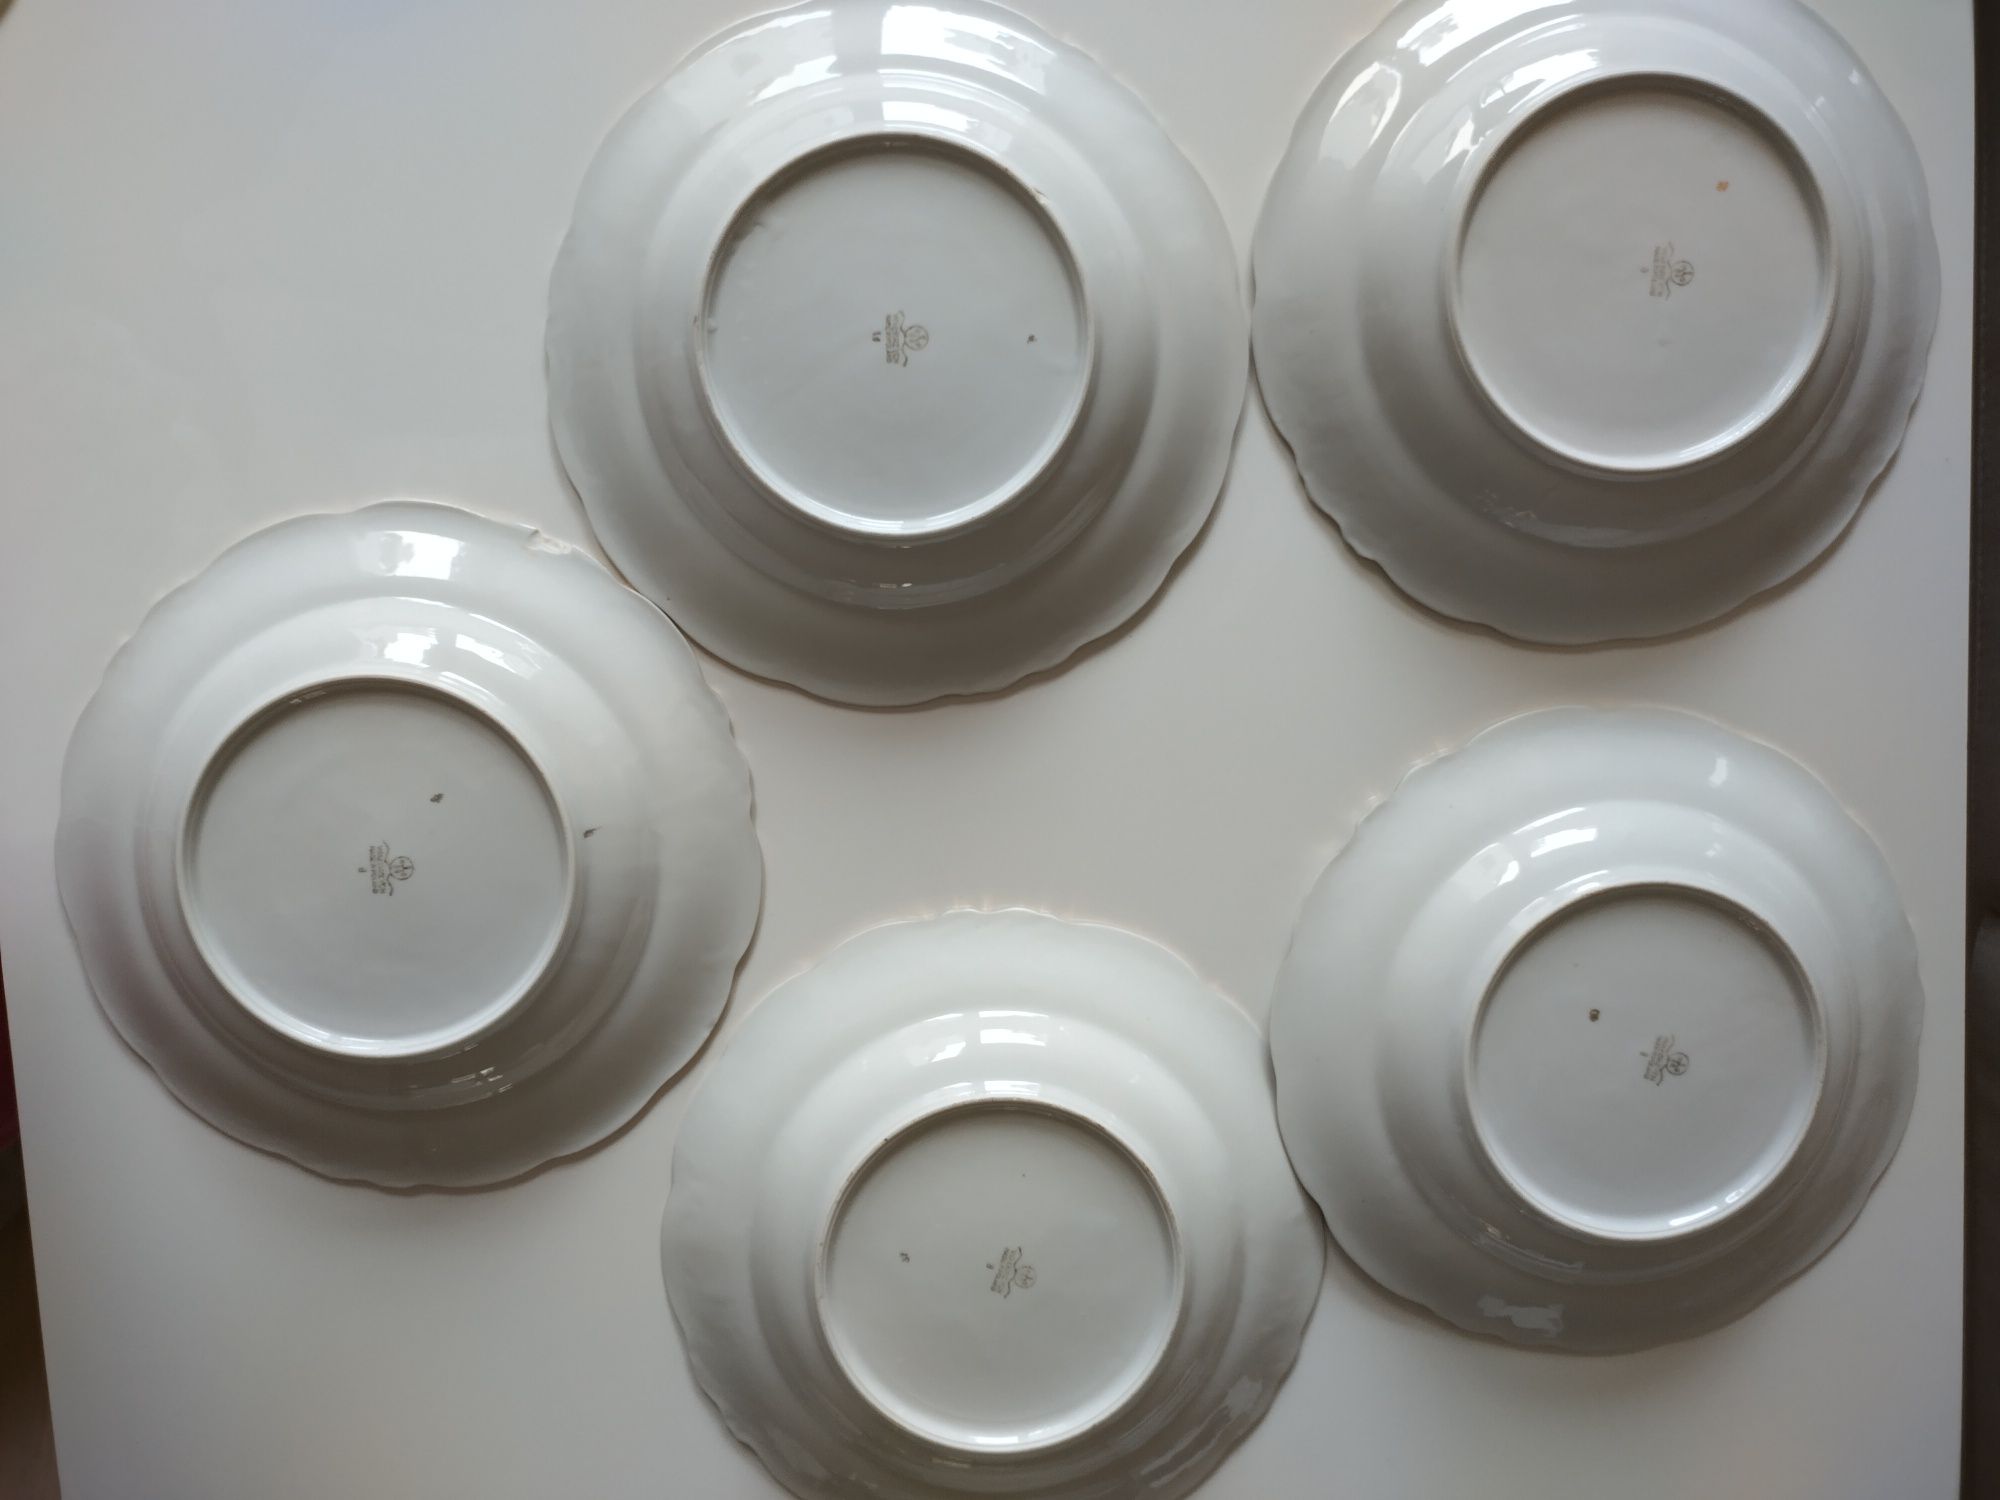 Tłoczona porcelana Wałbrzych głębokie talerze obiadowe 5 sztuk